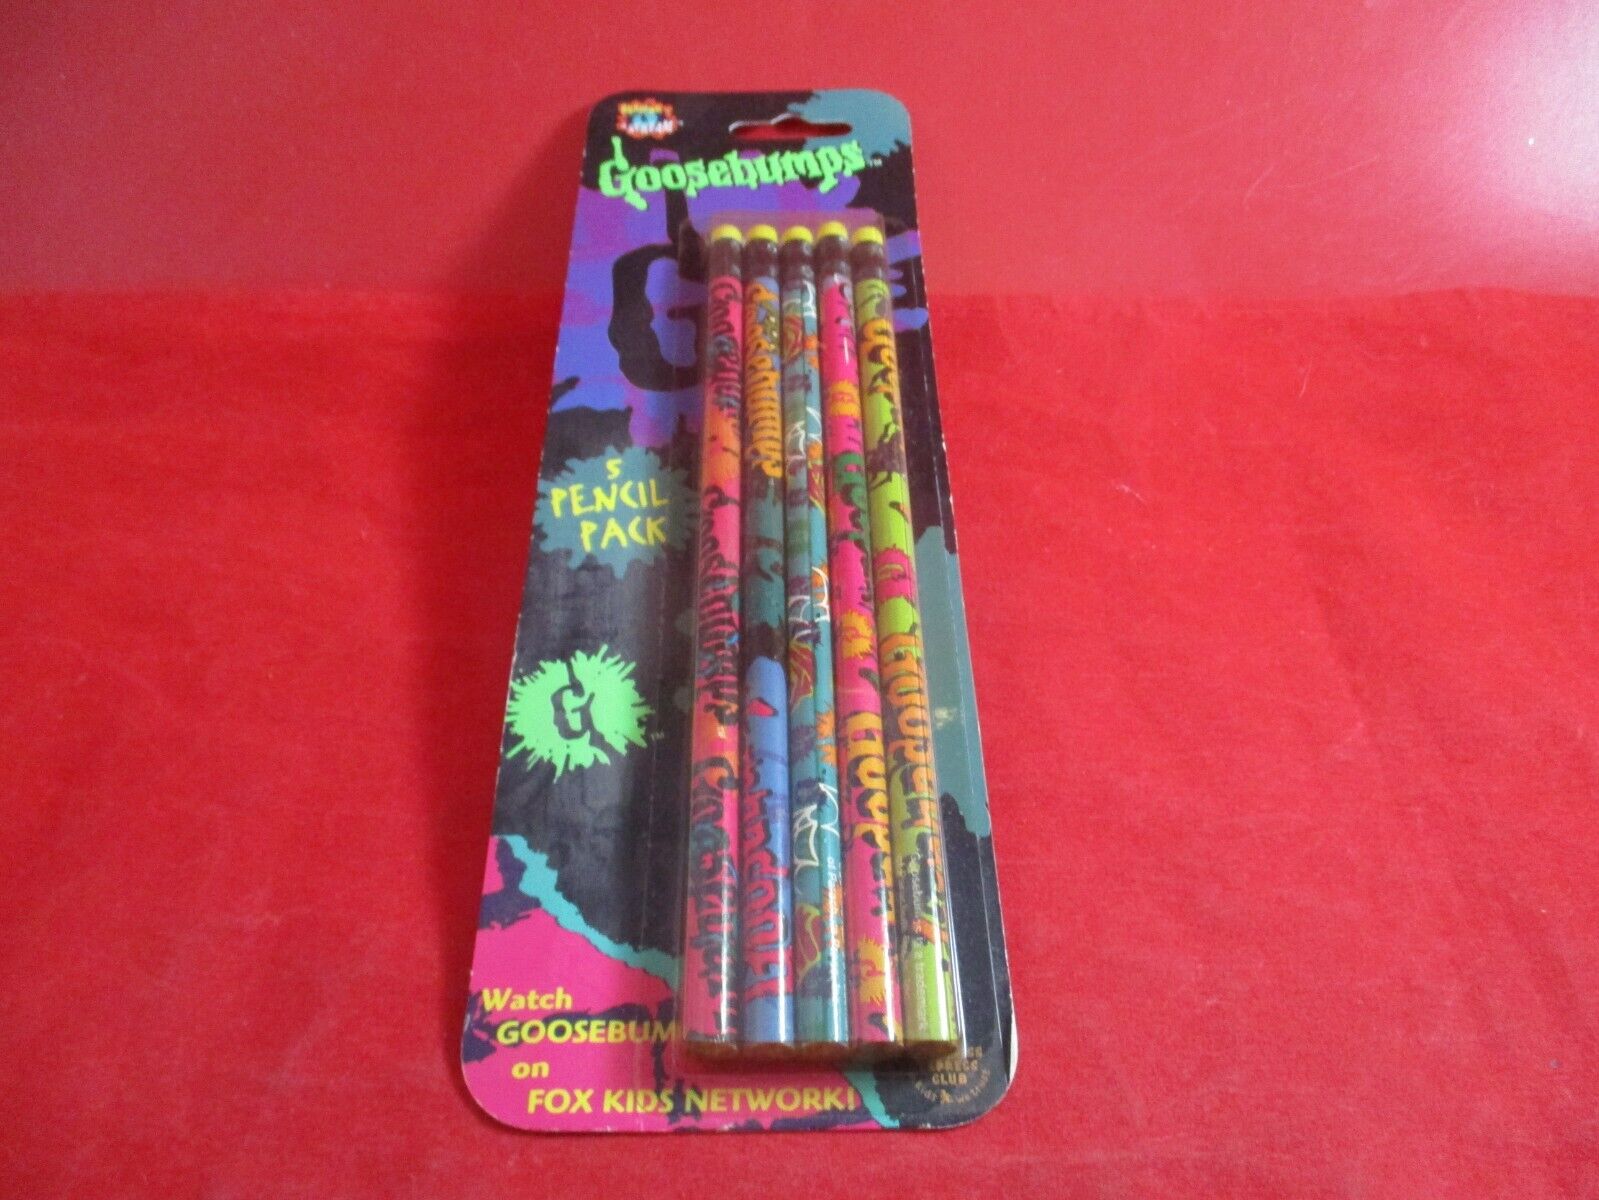 R.L. Stine Goosebumps 5 Pencil Pack *NEW* Retro